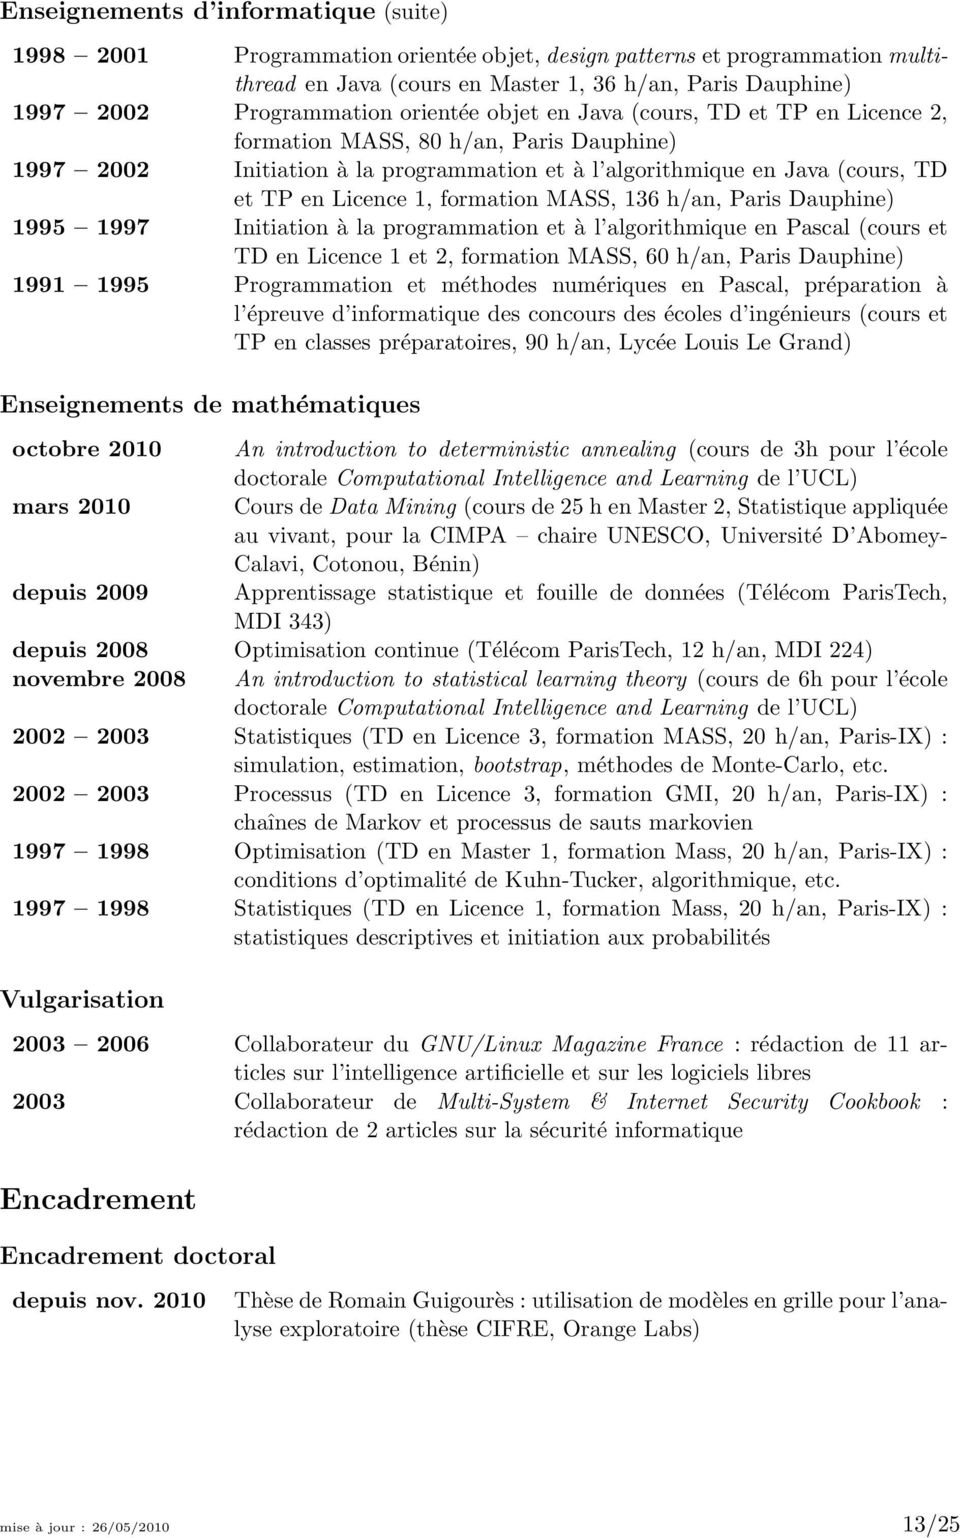 formation MASS, 136 h/an, Paris Dauphine) 1995 1997 Initiation à la programmation et à l algorithmique en Pascal (cours et TD en Licence 1 et 2, formation MASS, 60 h/an, Paris Dauphine) 1991 1995